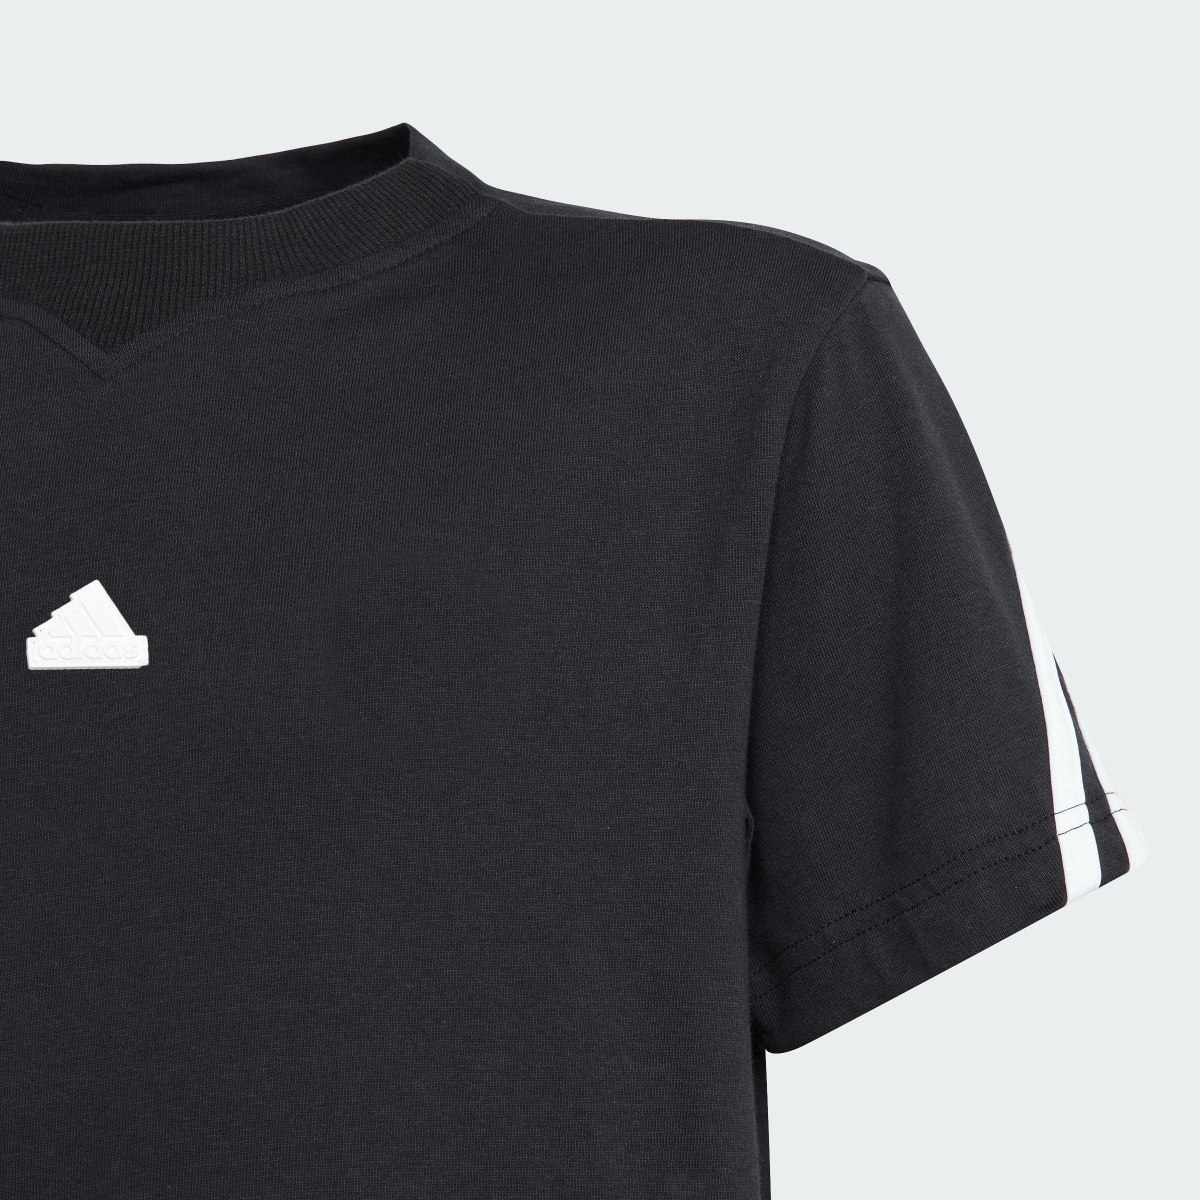 Adidas Future Icons 3-Streifen T-Shirt. 5